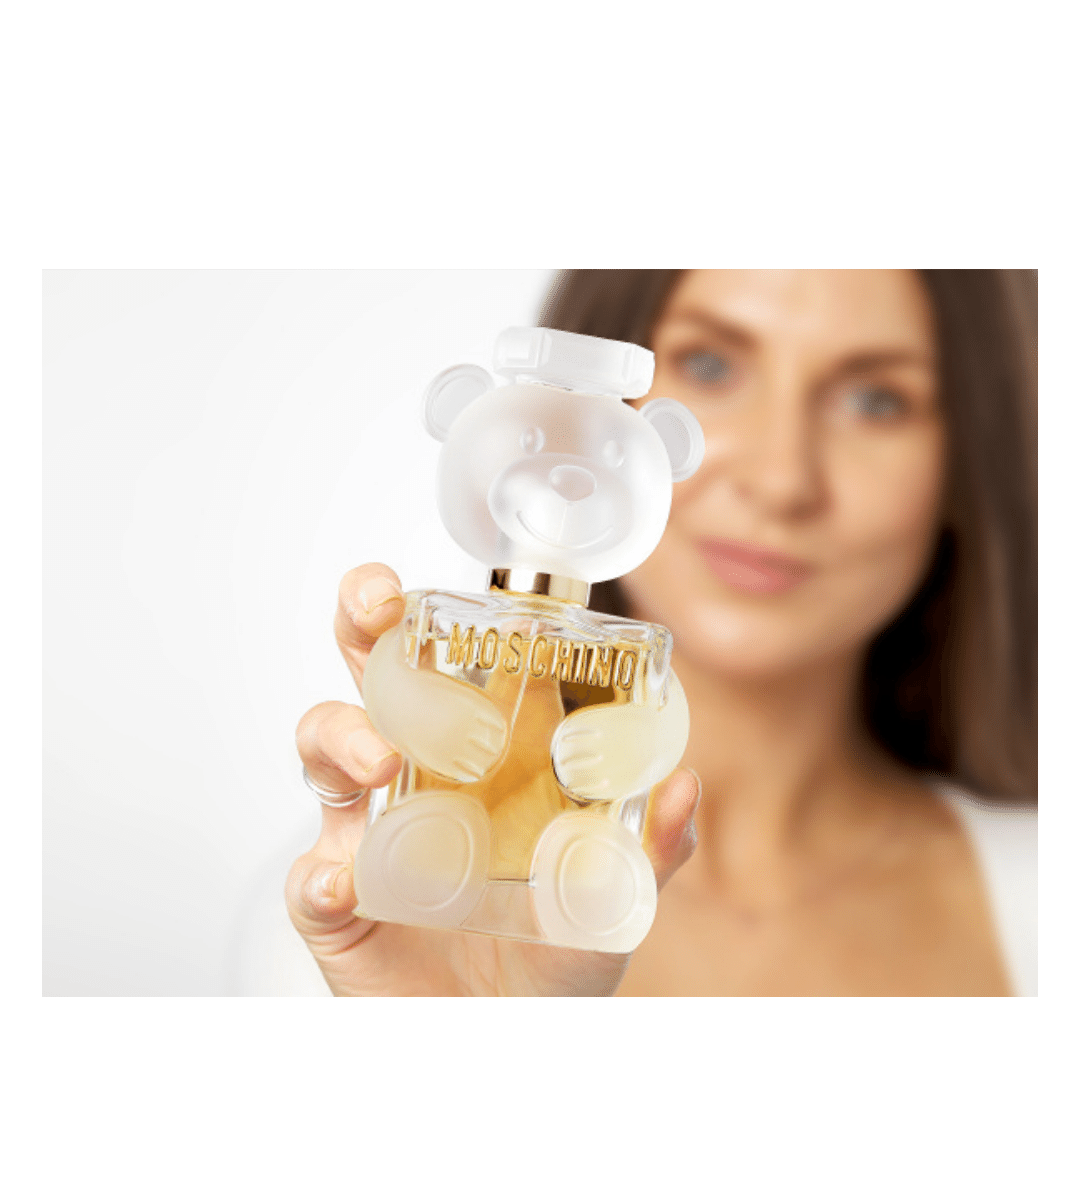 Moschino - Toy 2 Eau De Parfum